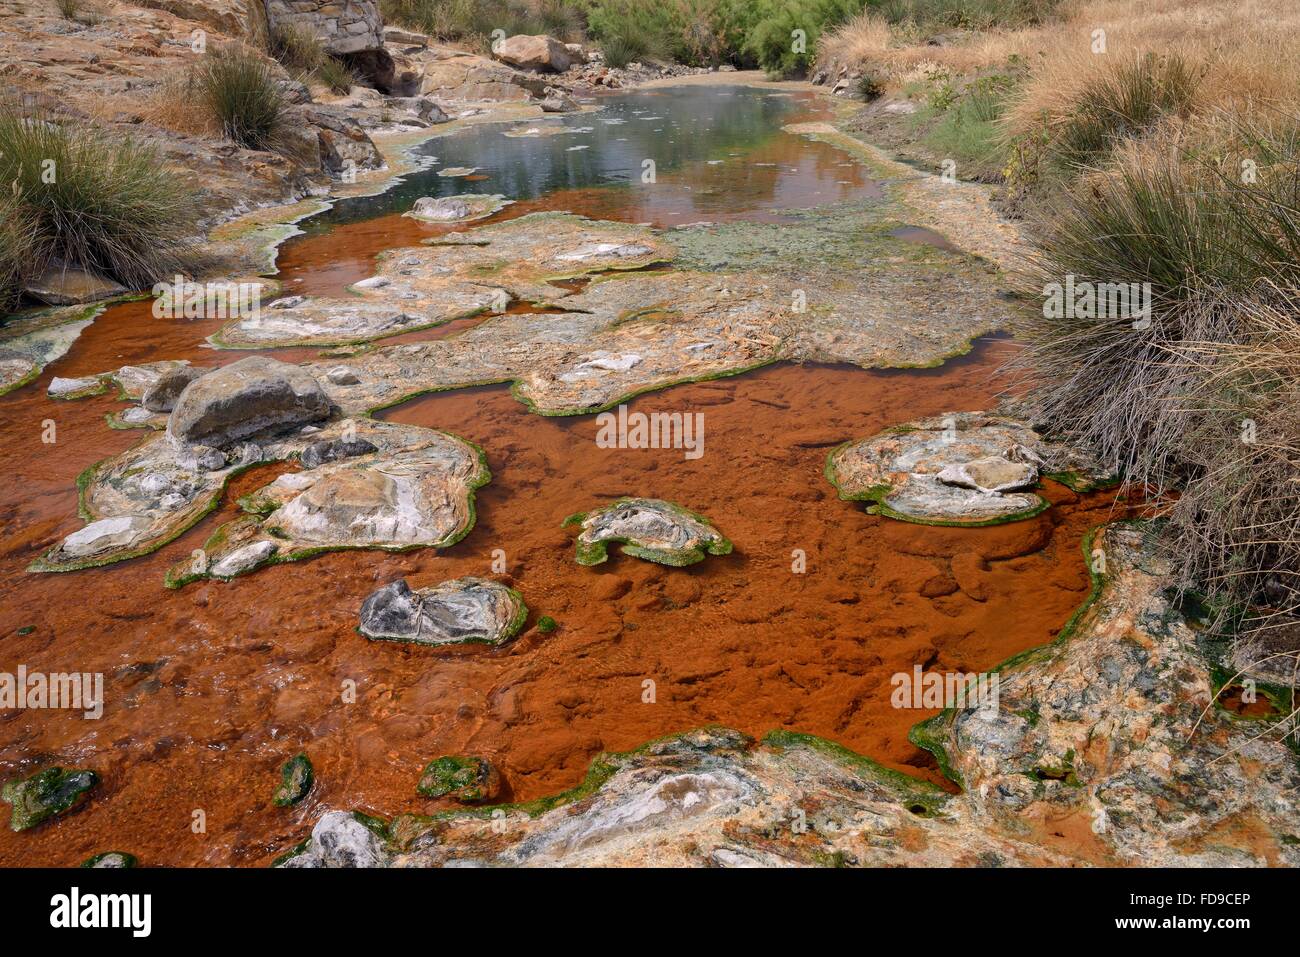 Rivière thermique, alimenté avec de l'eau bouillante à partir de sources chaudes, avec des excroissances colorées des algues bleu-vert, Polychnitos, Lesbos. Banque D'Images